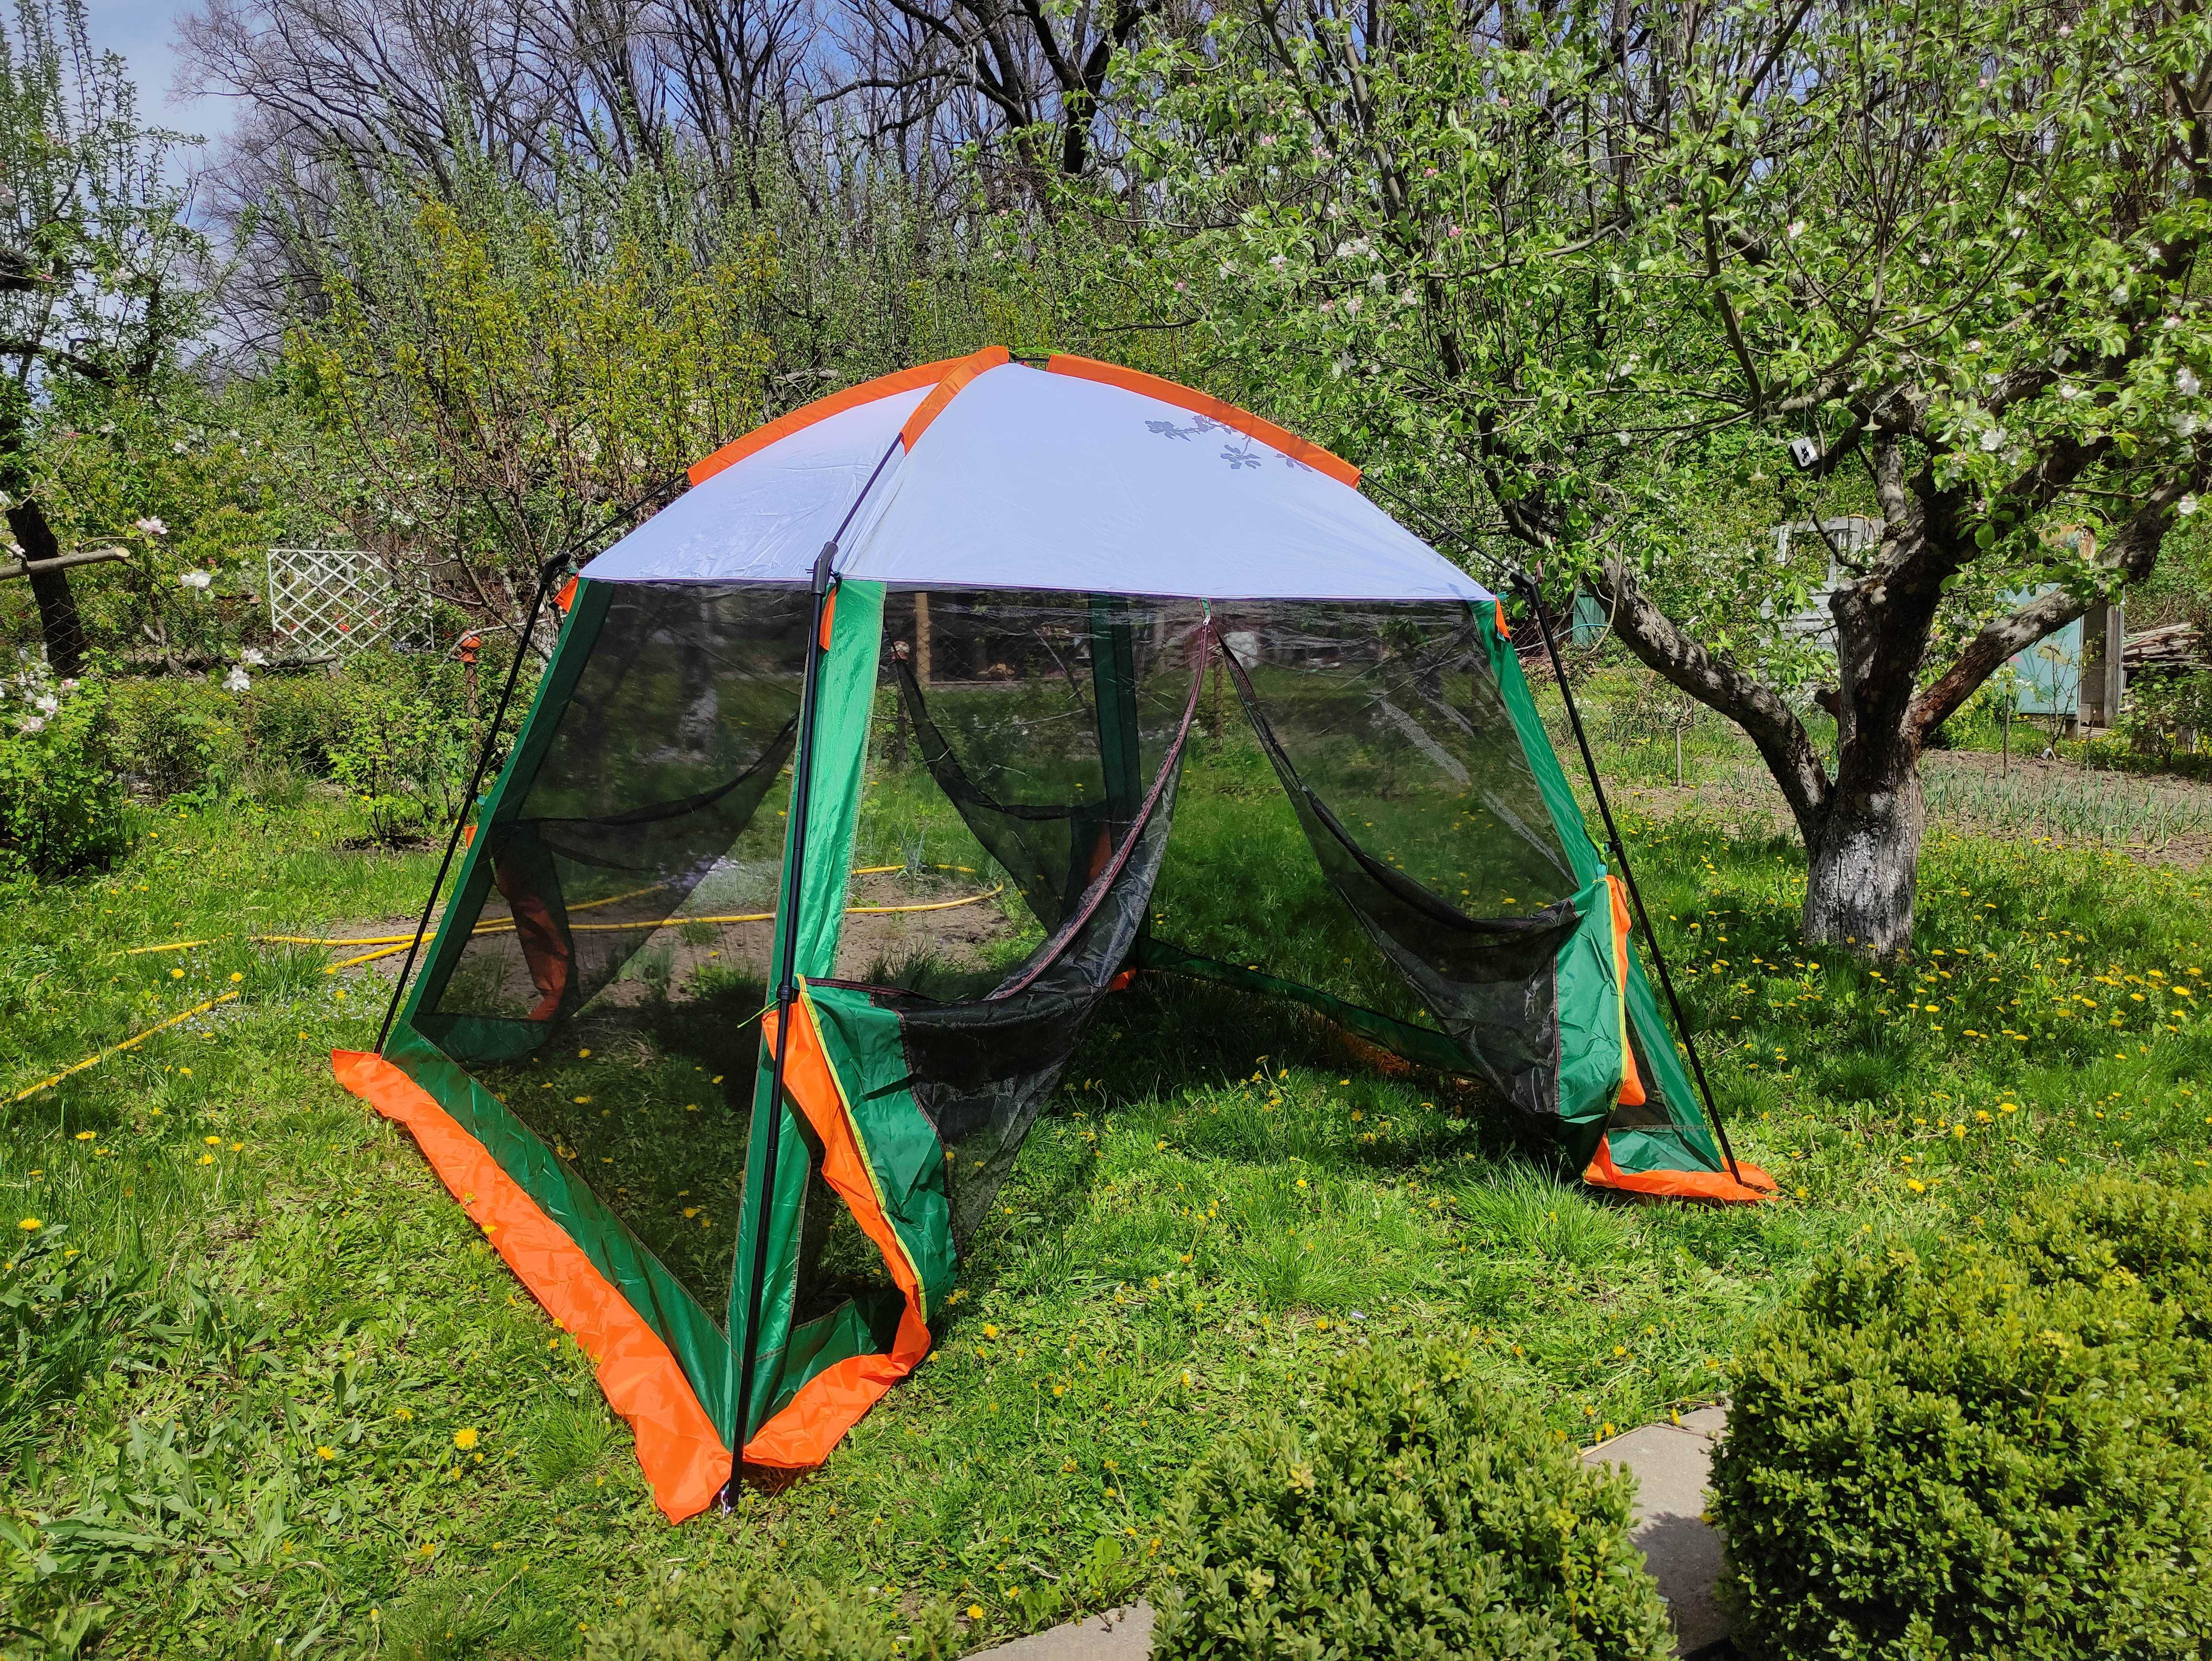 МЕГА палатка тент шатер туристический садовый с москитной сеткой